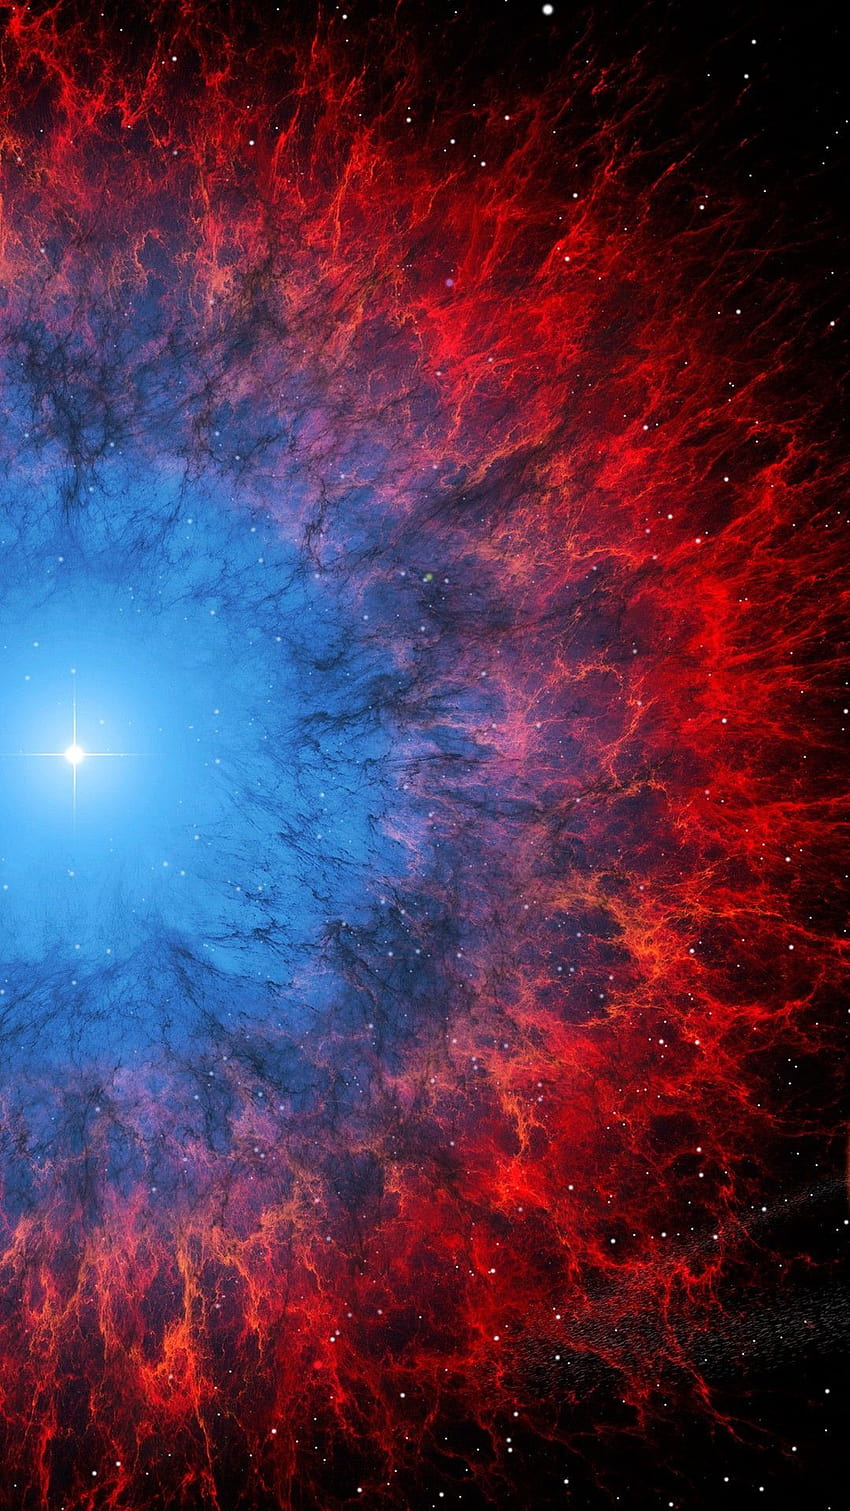 Himmel, Nebel, Rot, astronomisches Objekt, Blau, Weltraum im Jahr 2020, rote und blaue Galaxie HD-Handy-Hintergrundbild